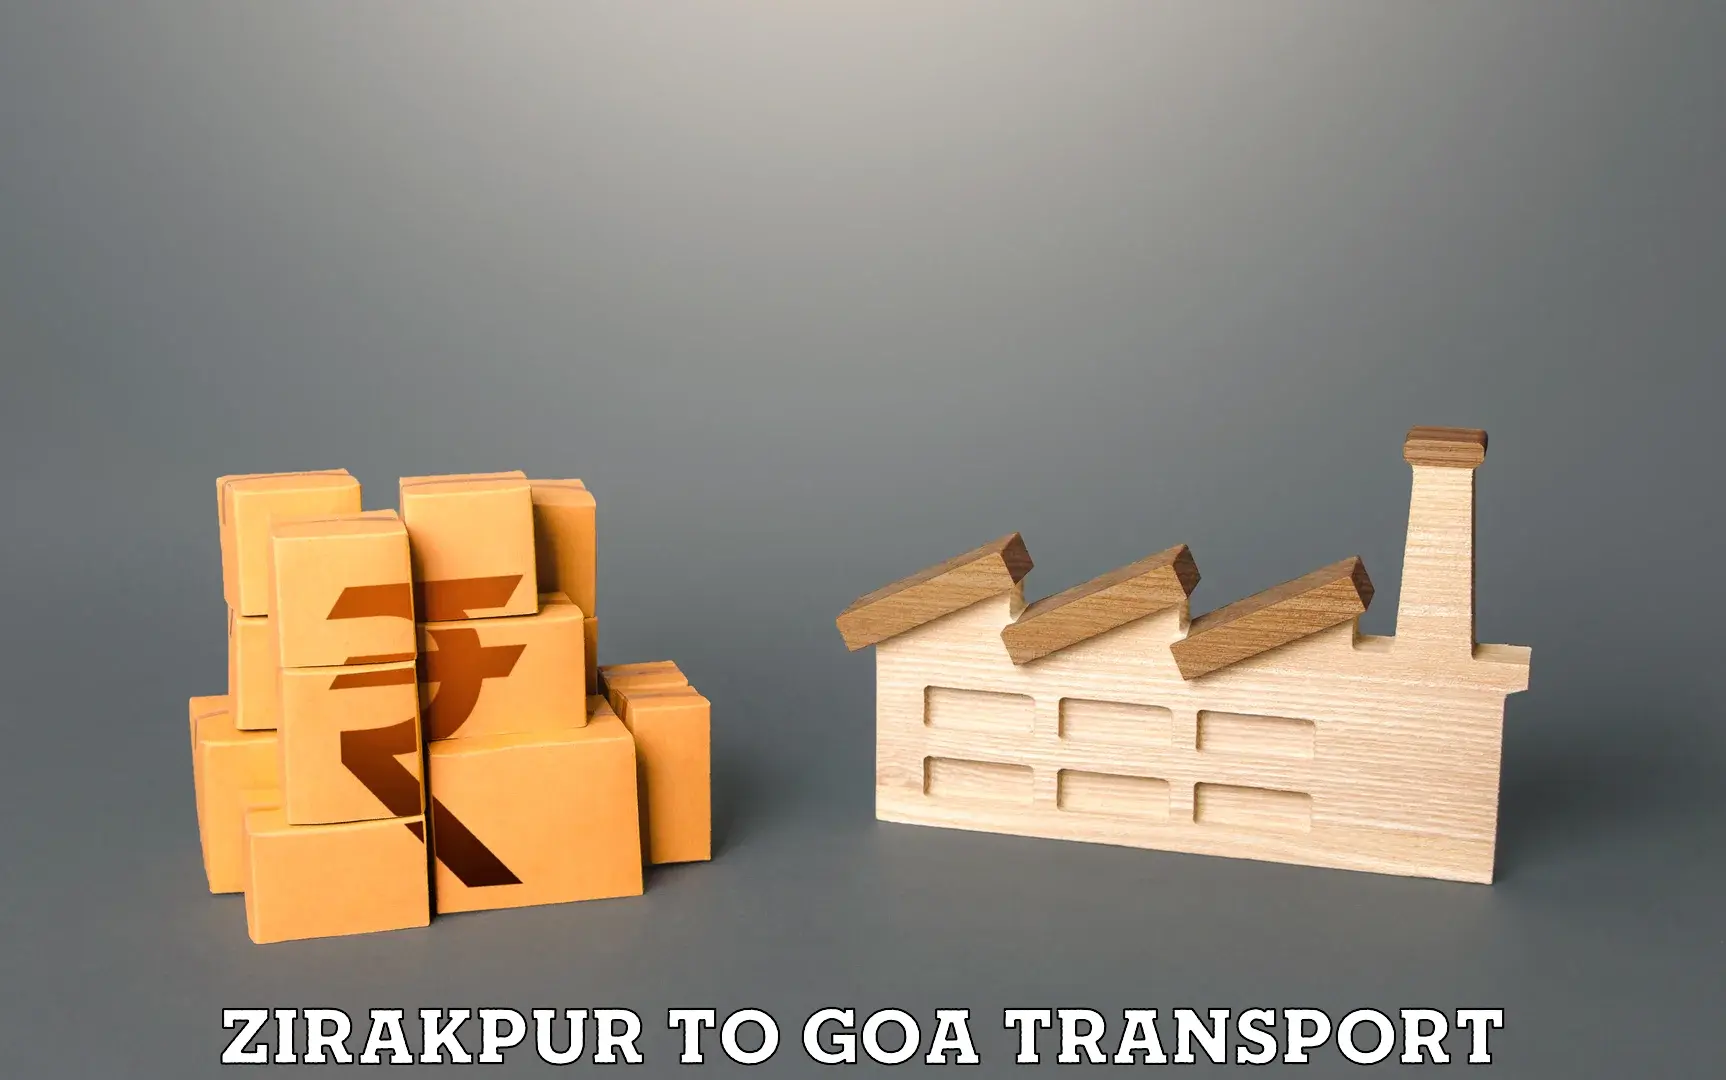 Lorry transport service Zirakpur to Panaji